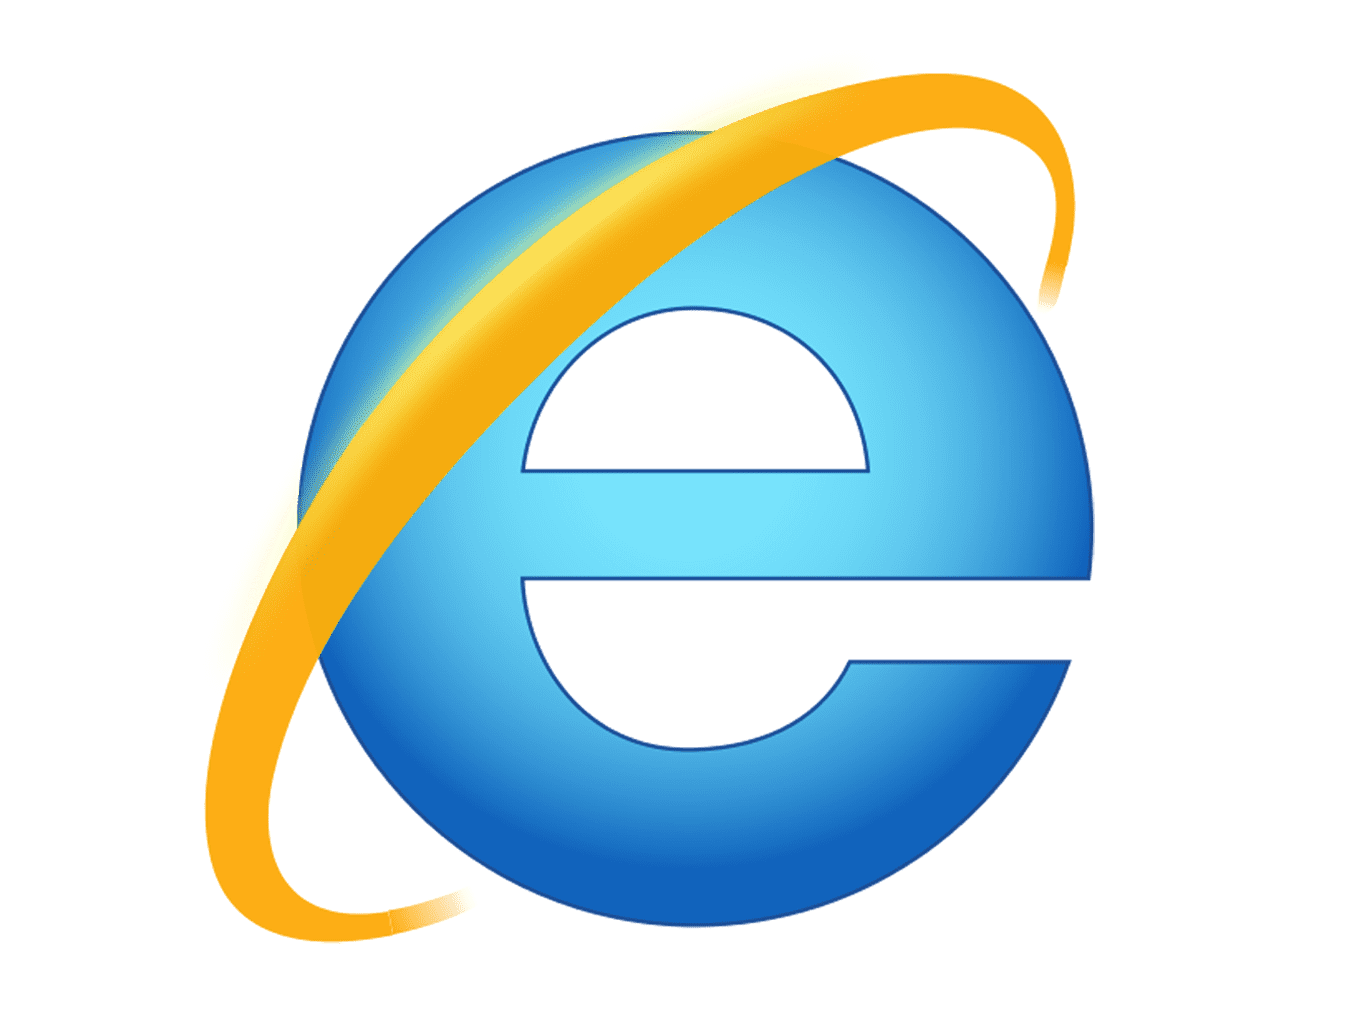 Internet-Explorer-Logo.png